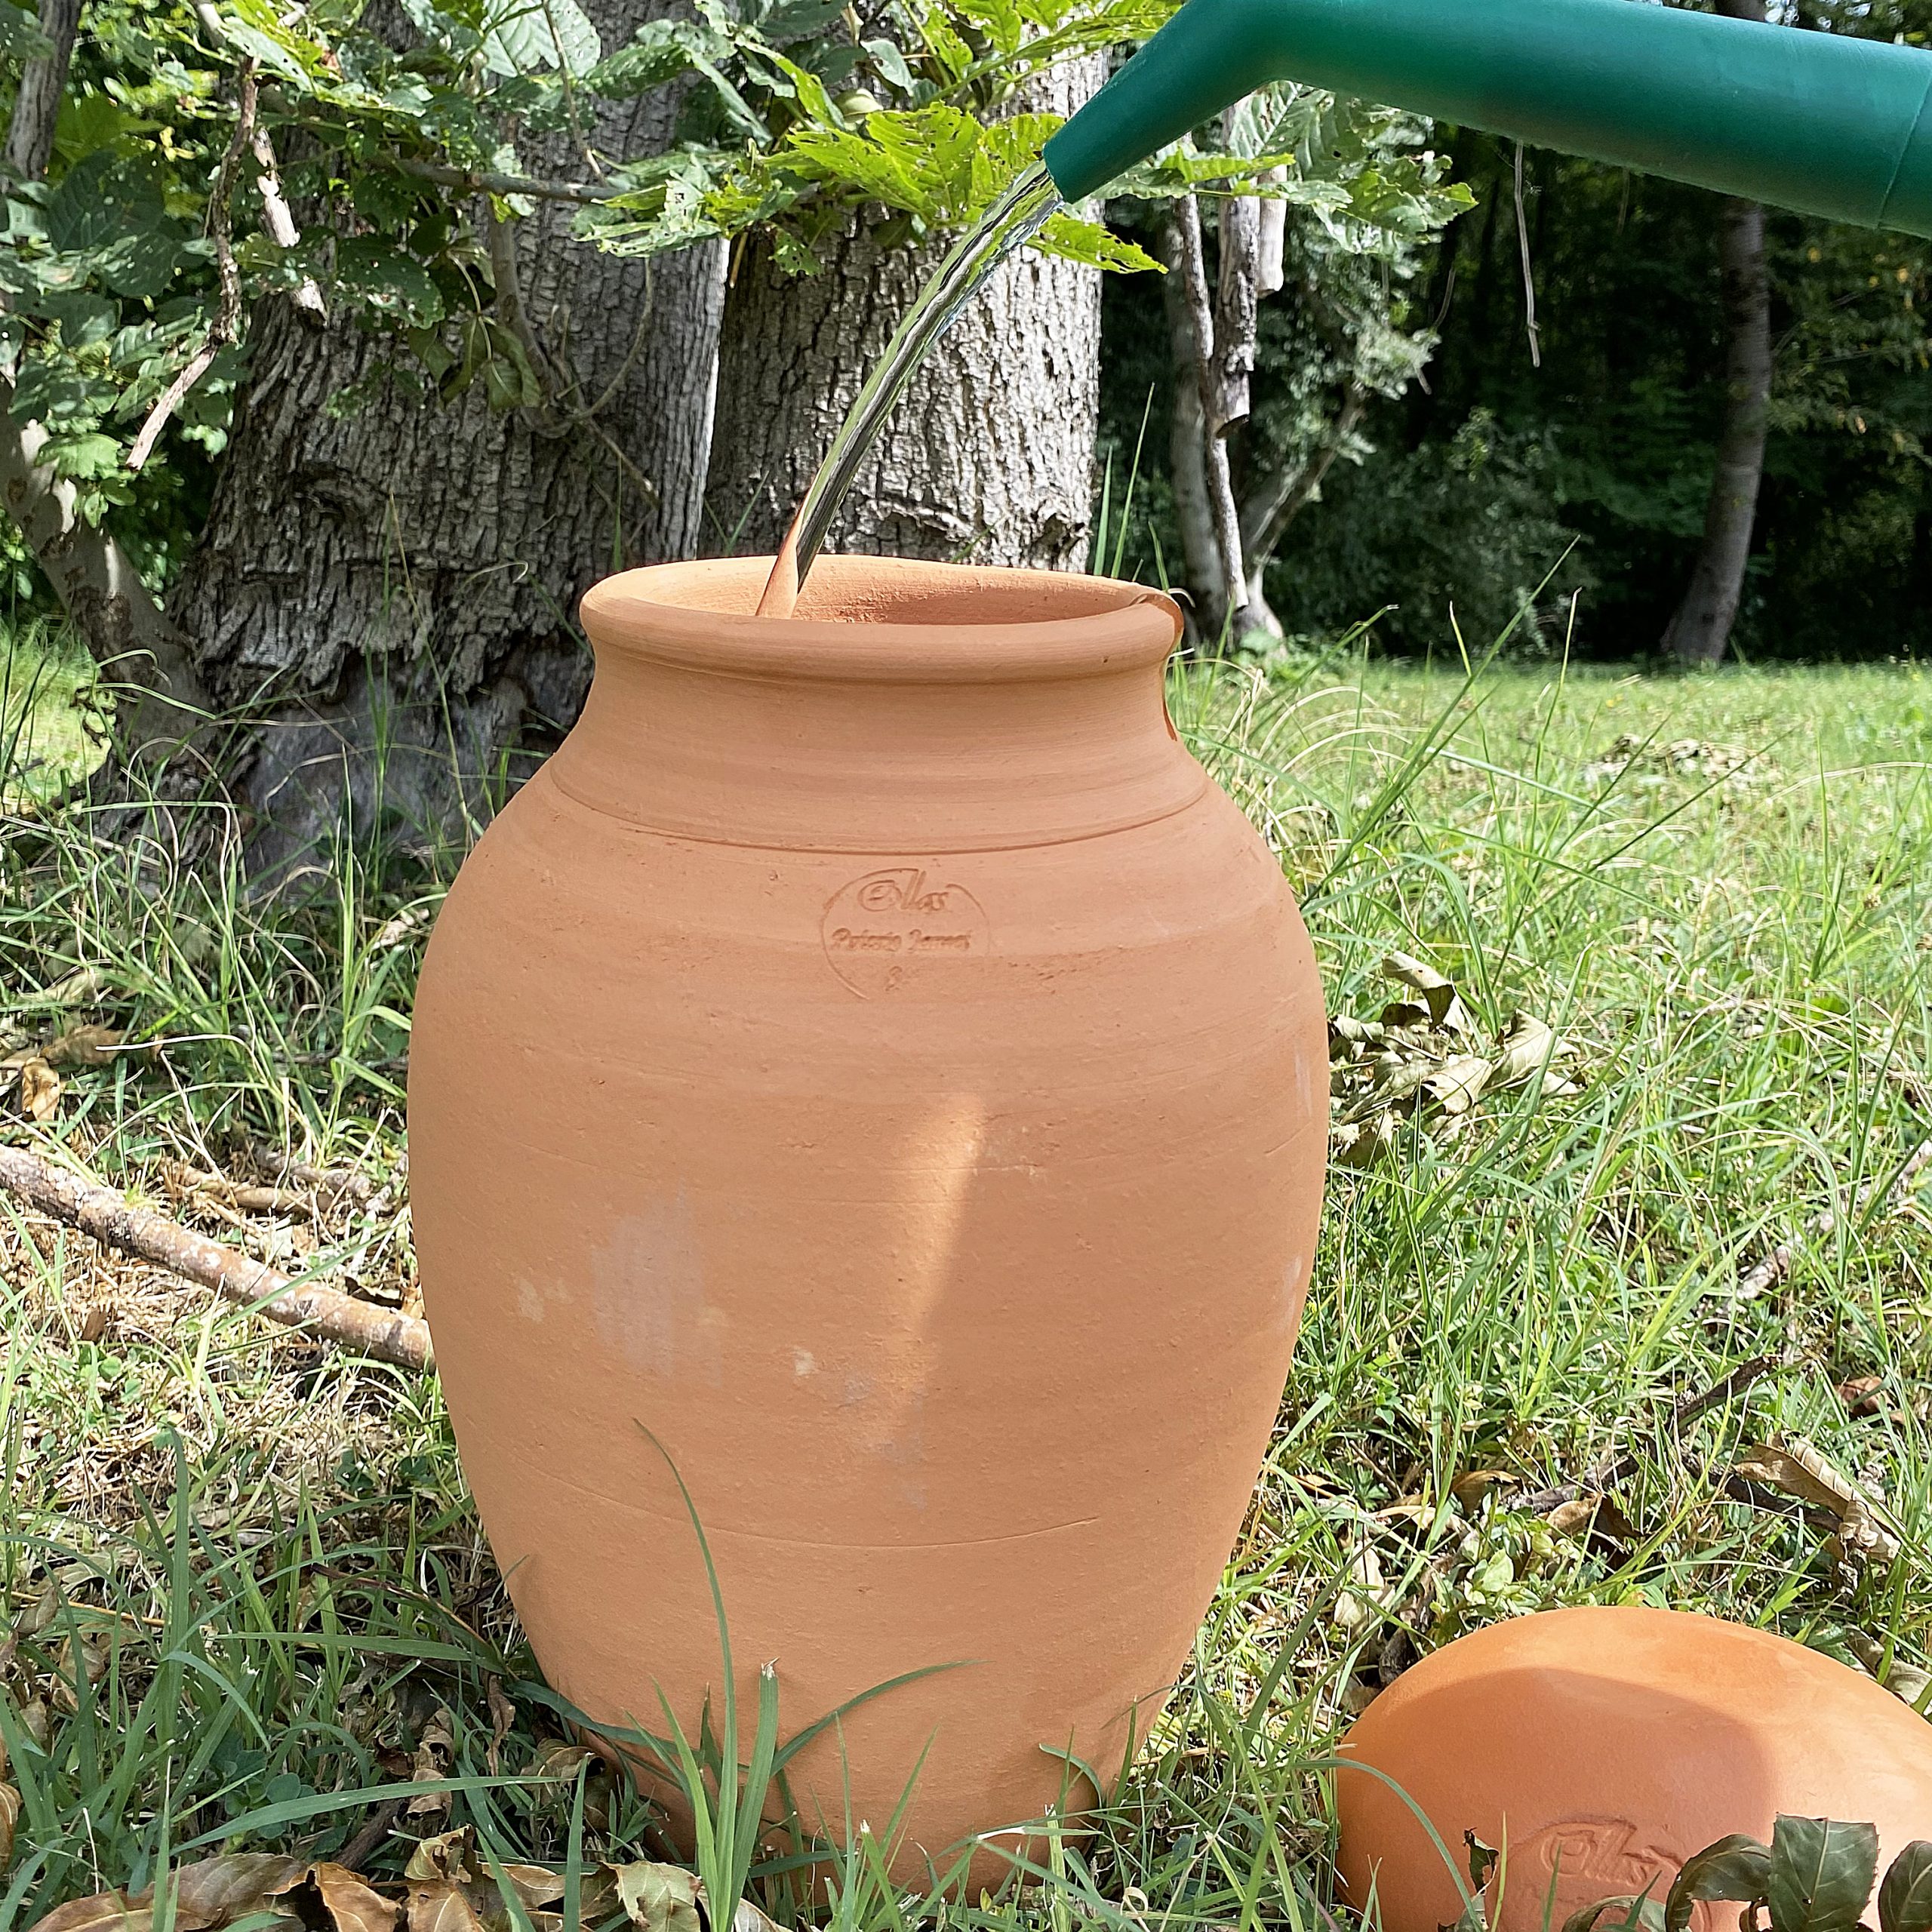 Olla d'arrosage 1,5L - poterie d'irrigation pour plantes, arbustes ou –  Maison Fertile